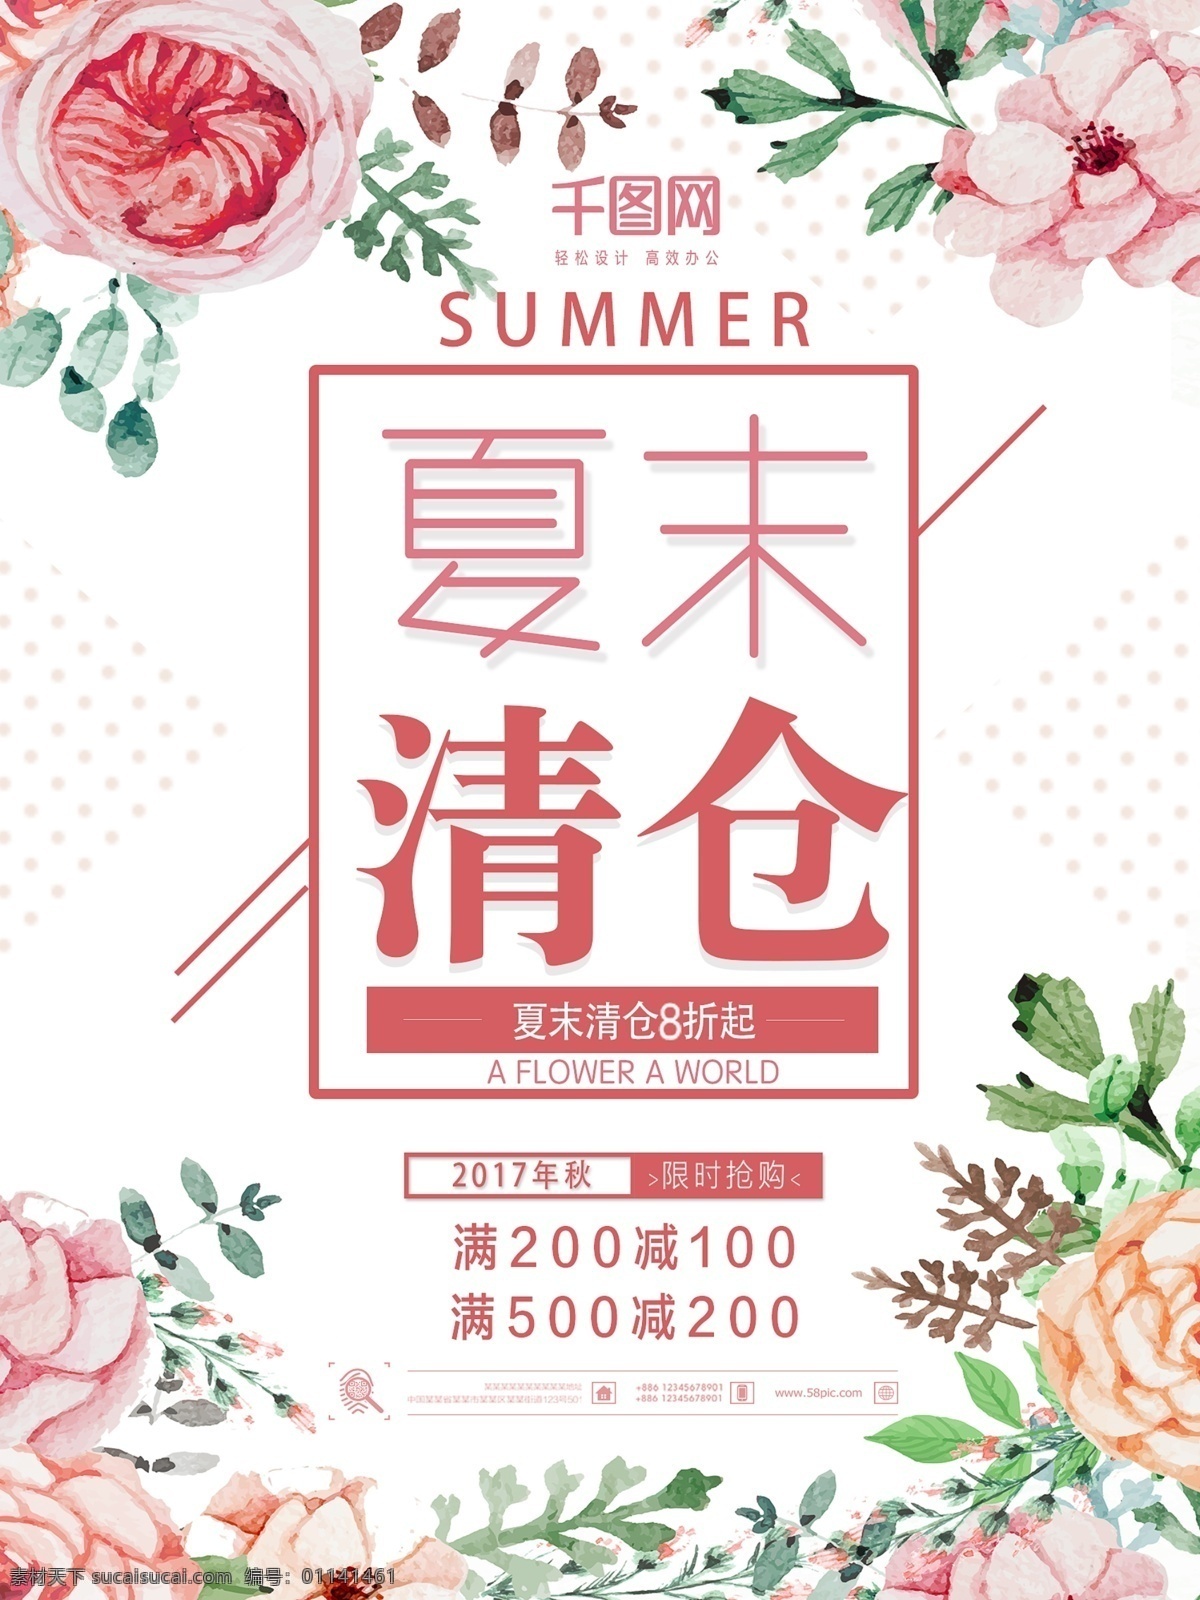 夏末 促销 主题 海报 夏季 清仓 打折 花卉